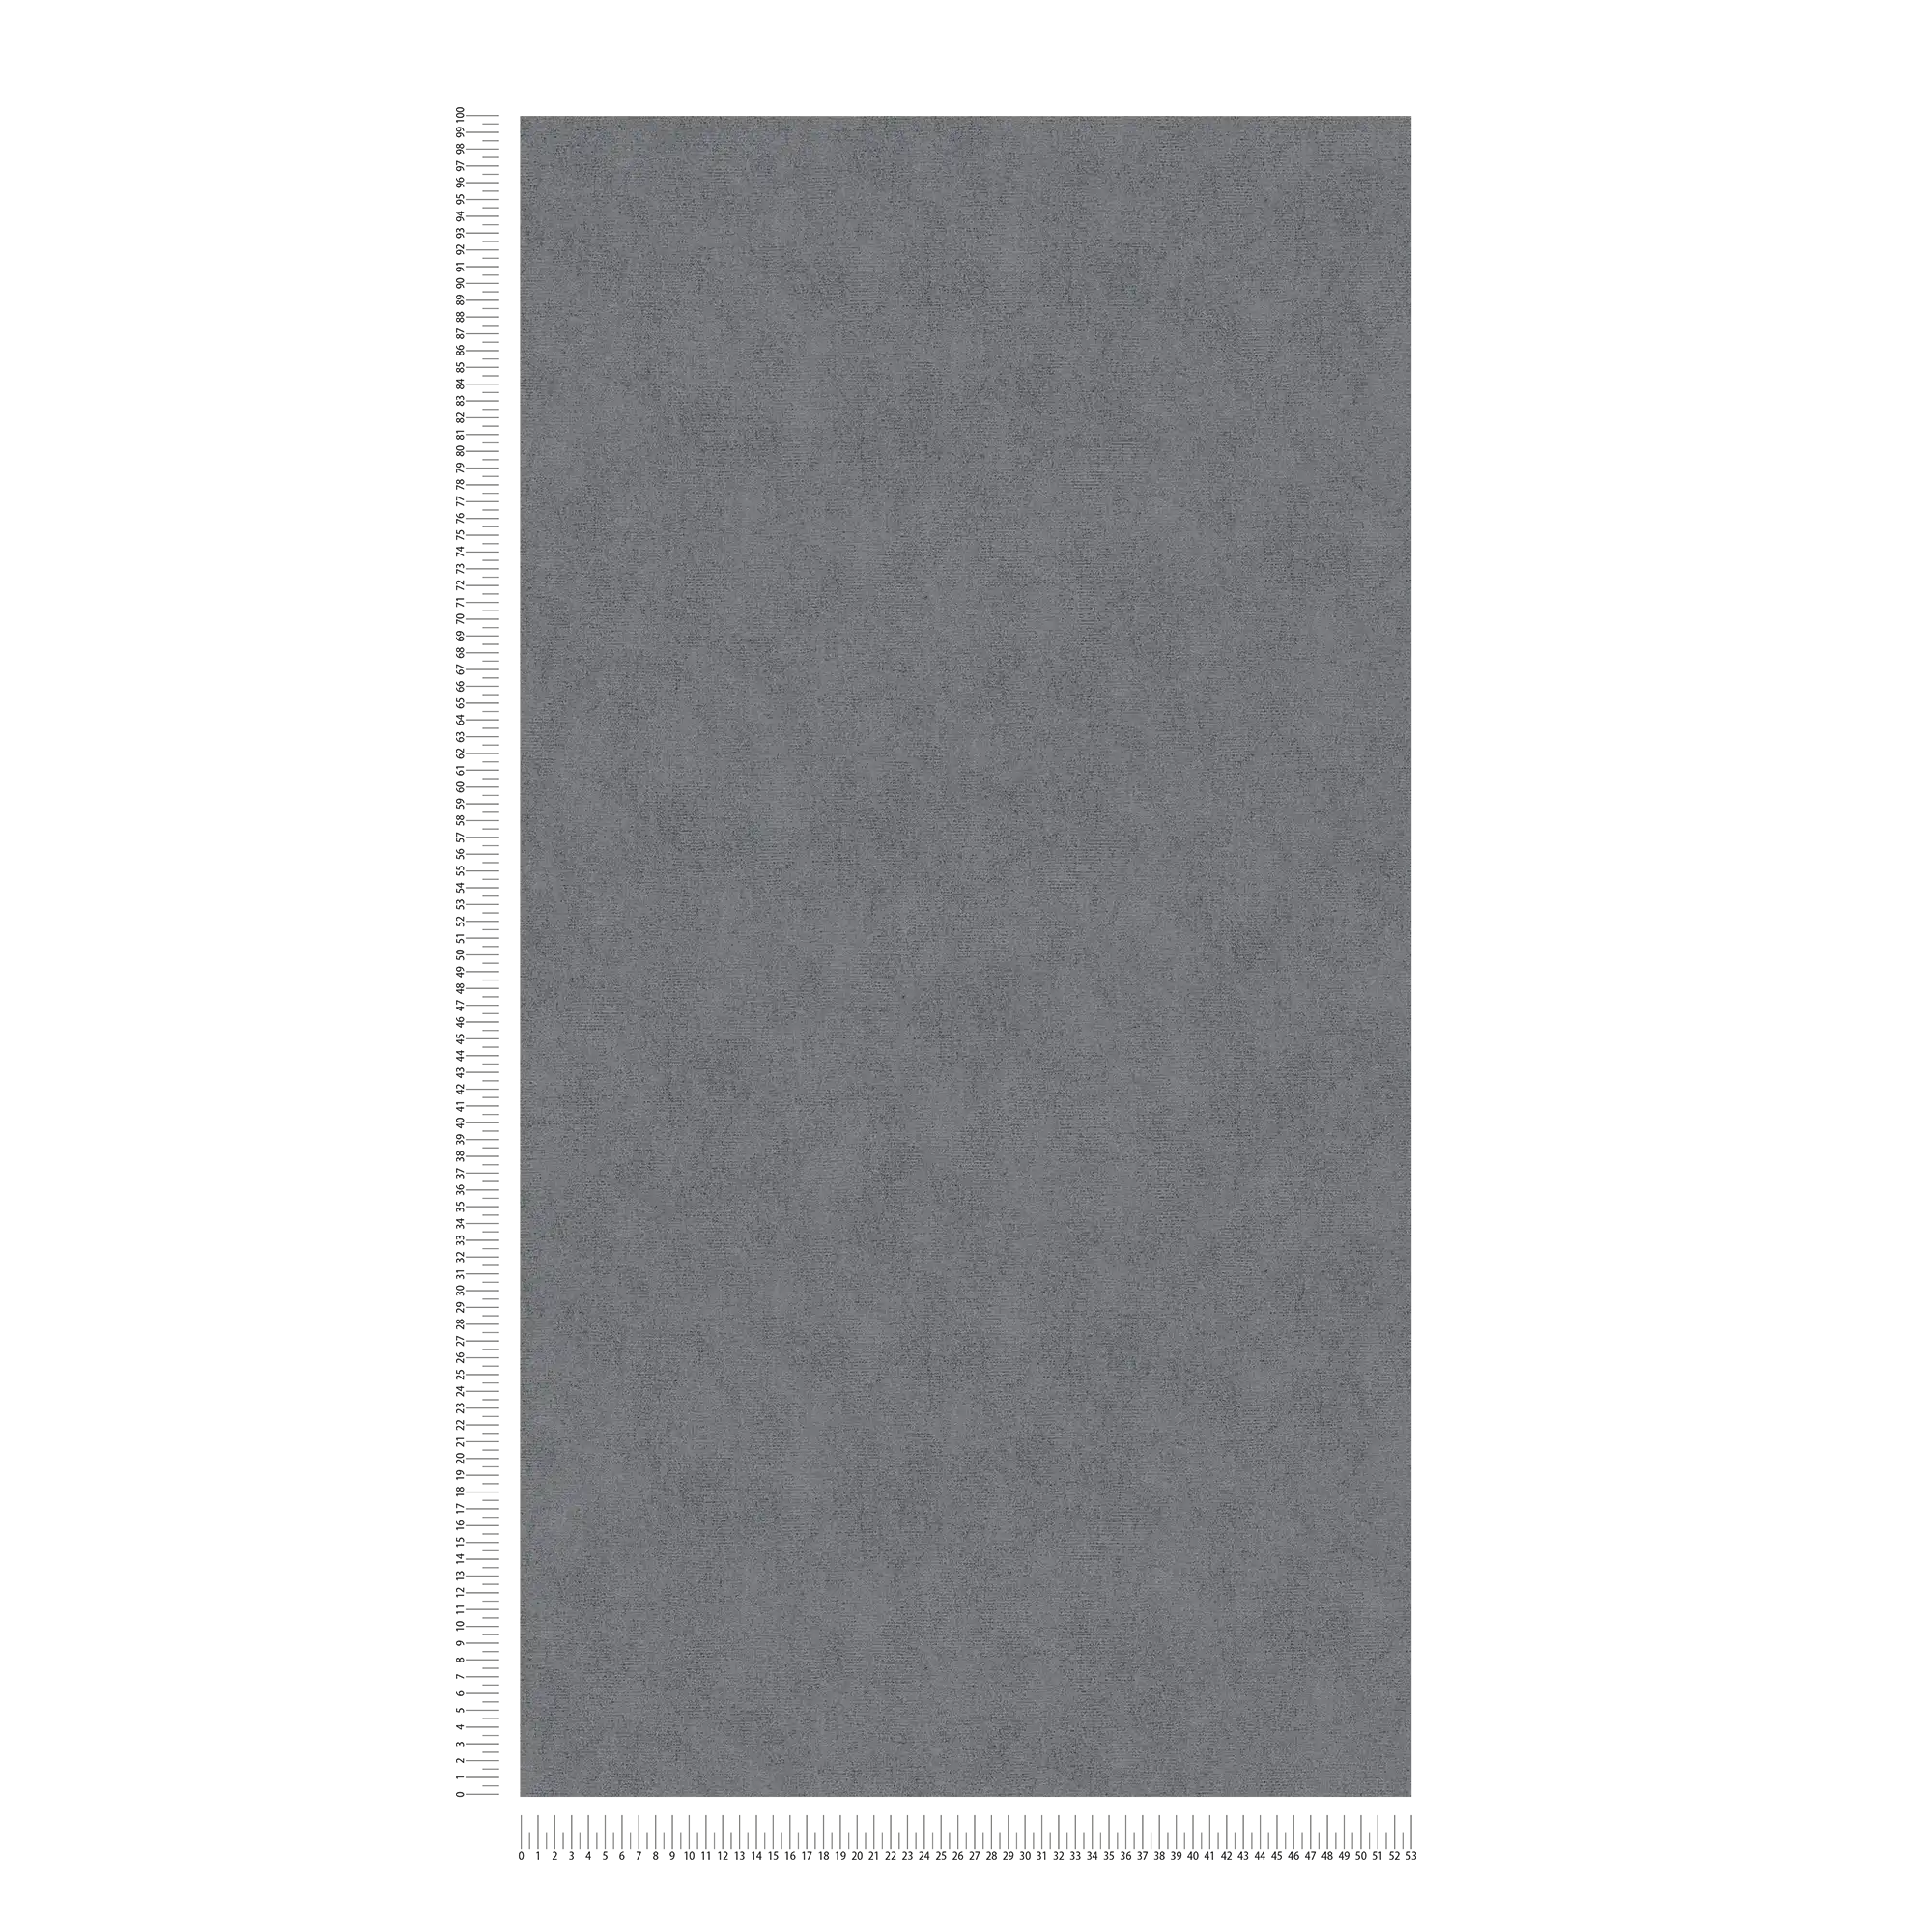             Eenheidsbehang donkergrijs gevlekt met glanseffect - grijs
        